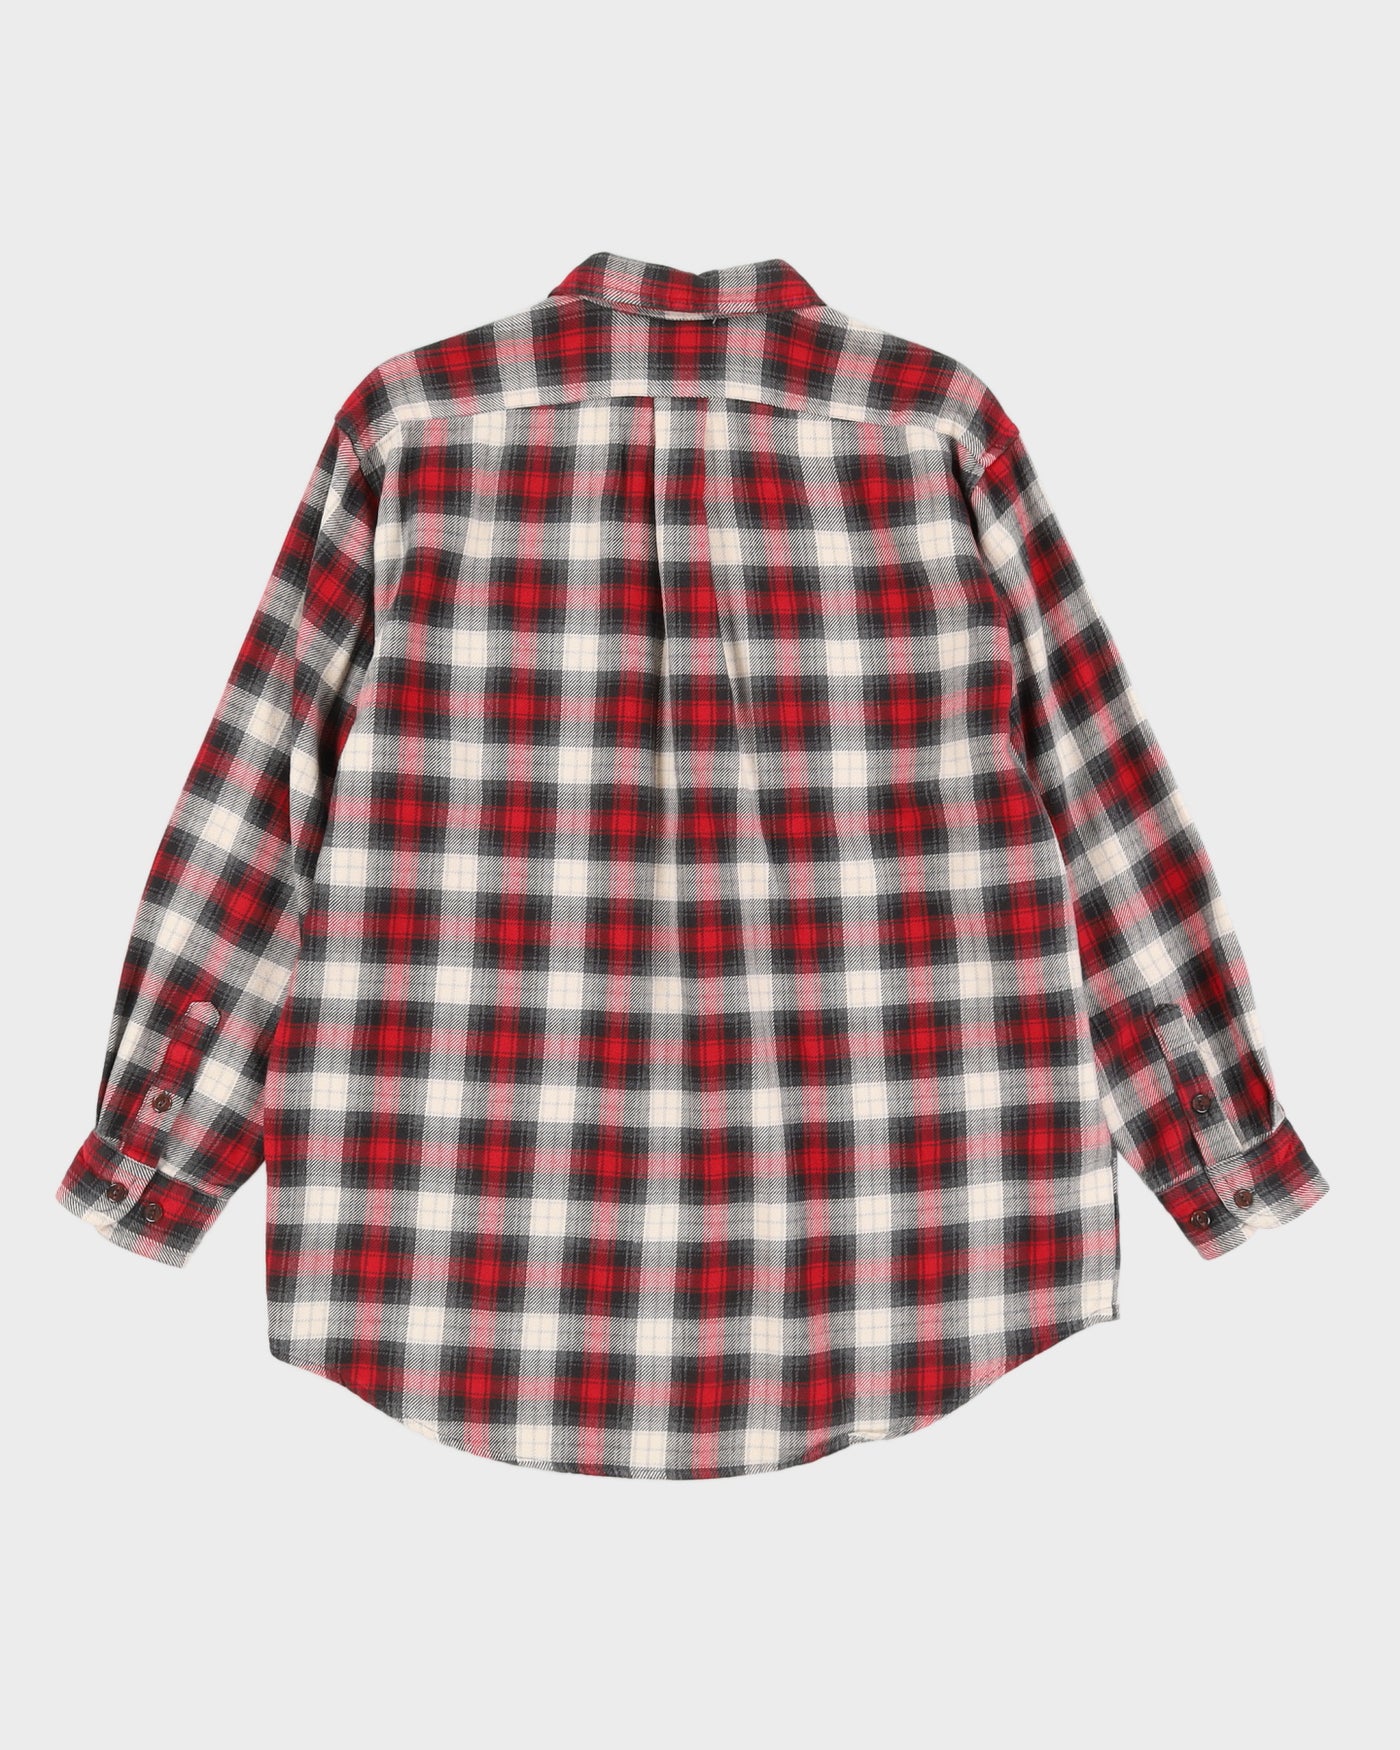 Eddie Bauer Red Checked Flannel Shirt - M